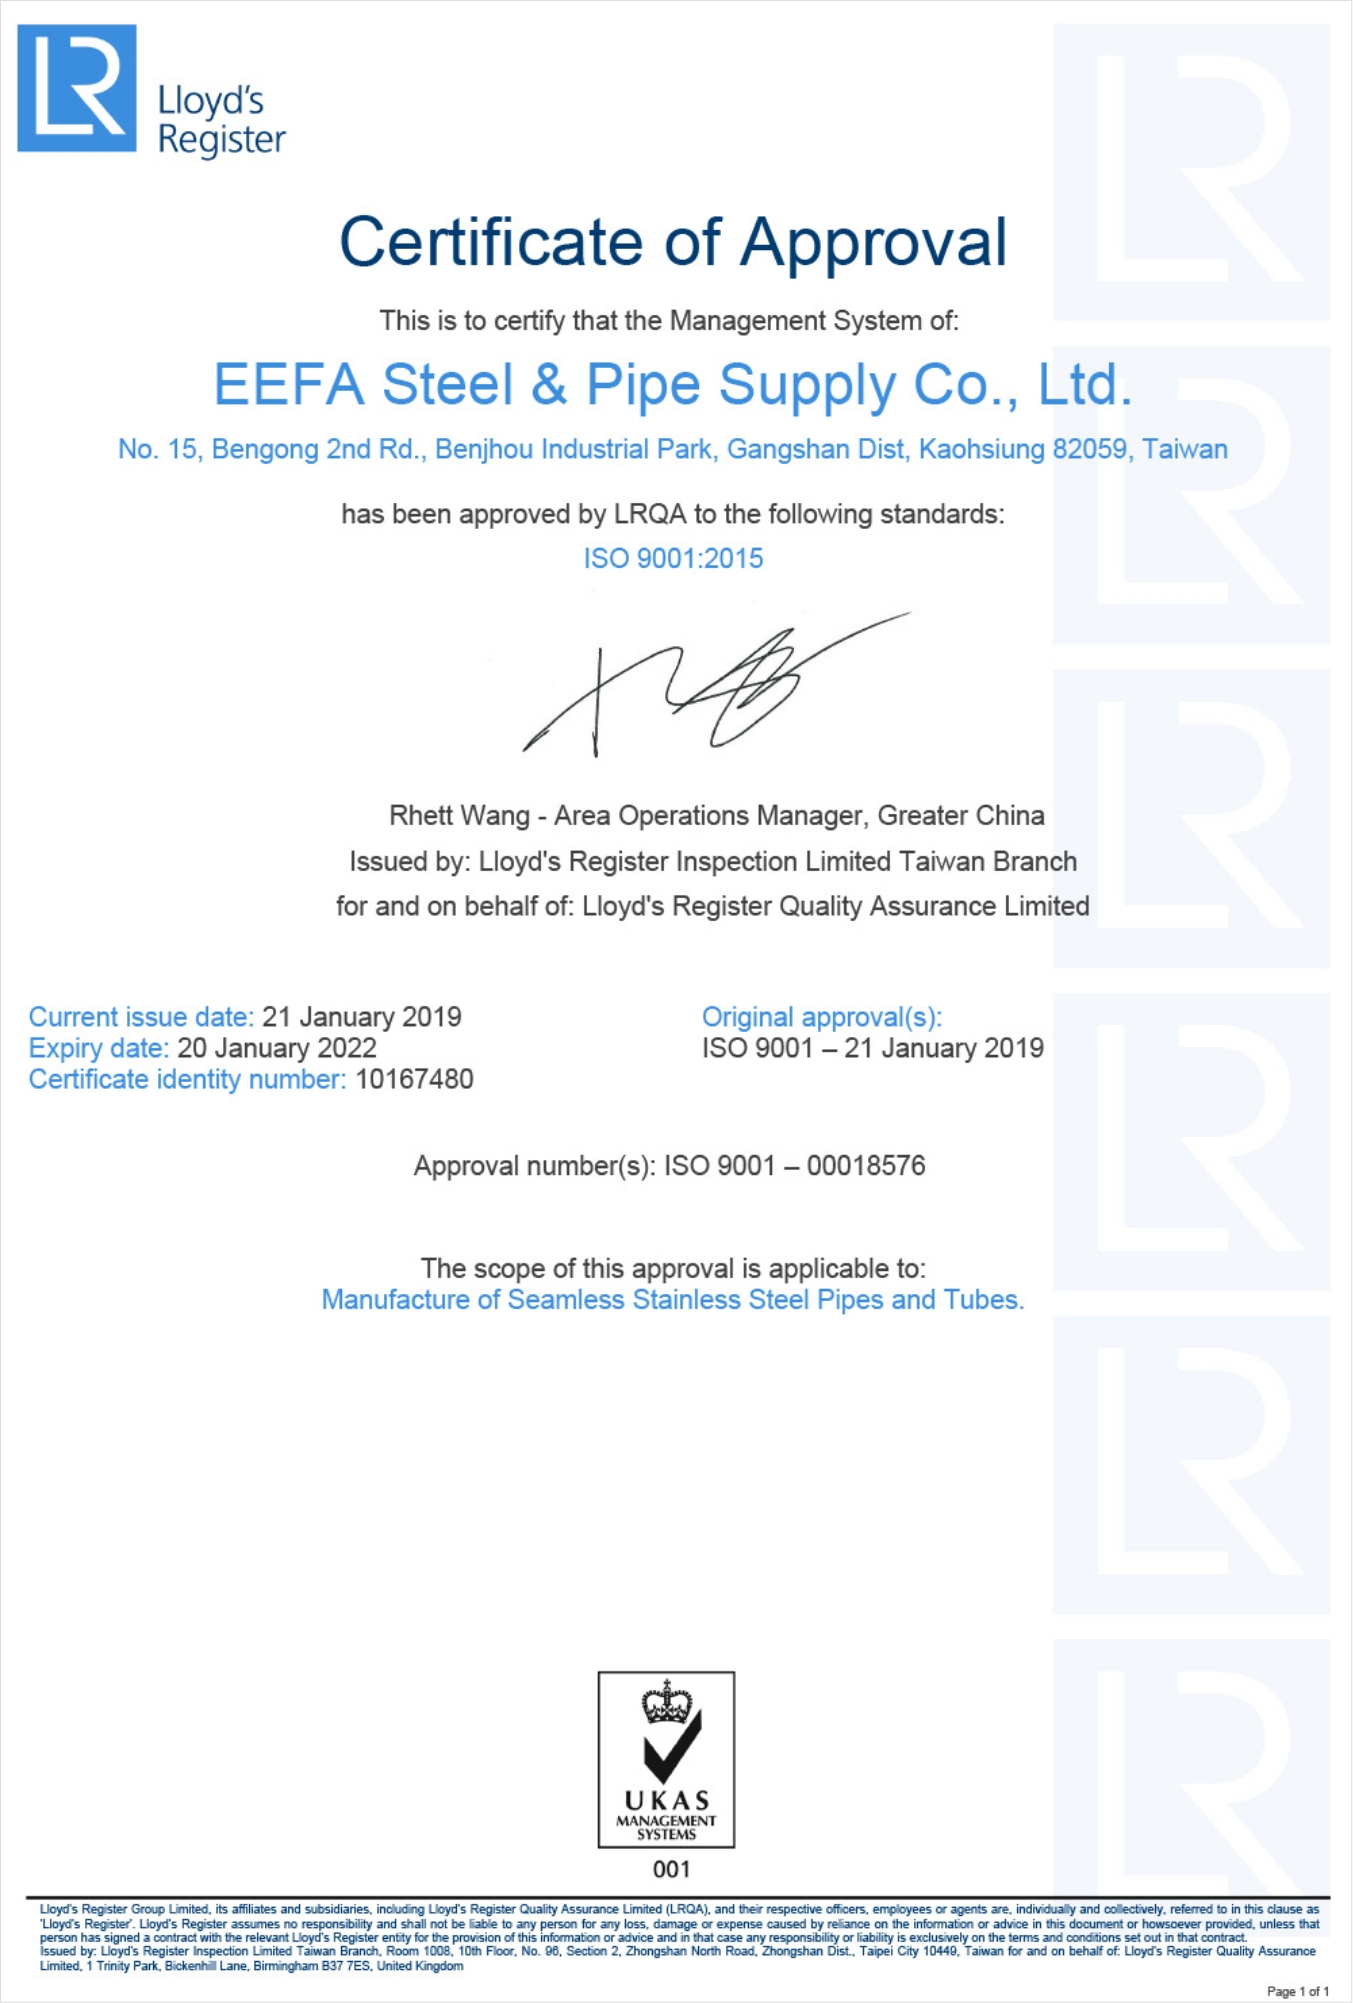 怡發鋼鐵製程榮獲歐盟壓力容器材料PED M認證 EEFA’s seamless stainless steel tube and pipe manufacturing process complies with the Pressure Equipment Directive of the EU